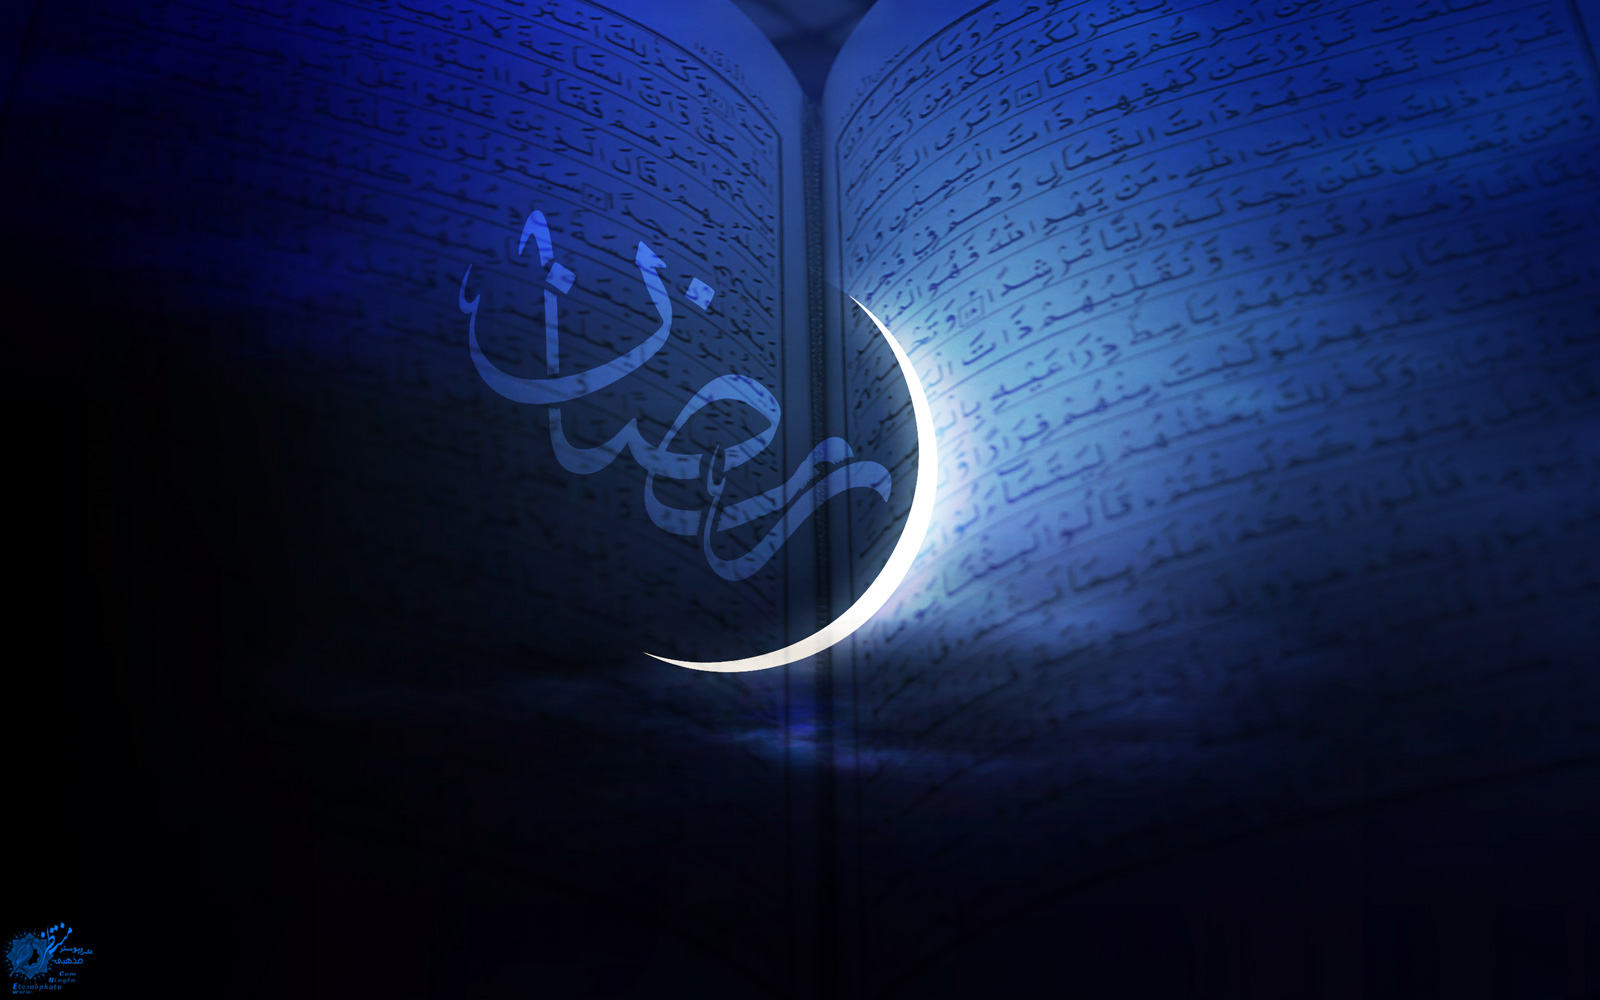 شنبه7 تیر هلال ماه رمضان رویت می شود/ روز یکشنبه 8 تیر ماه آغاز«ماه رمضان» است